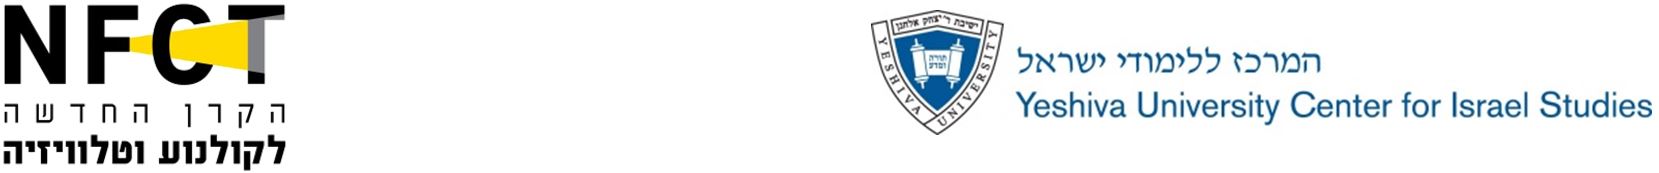 לוגו הקרו ולוגו המרכז ללימודי ישראל